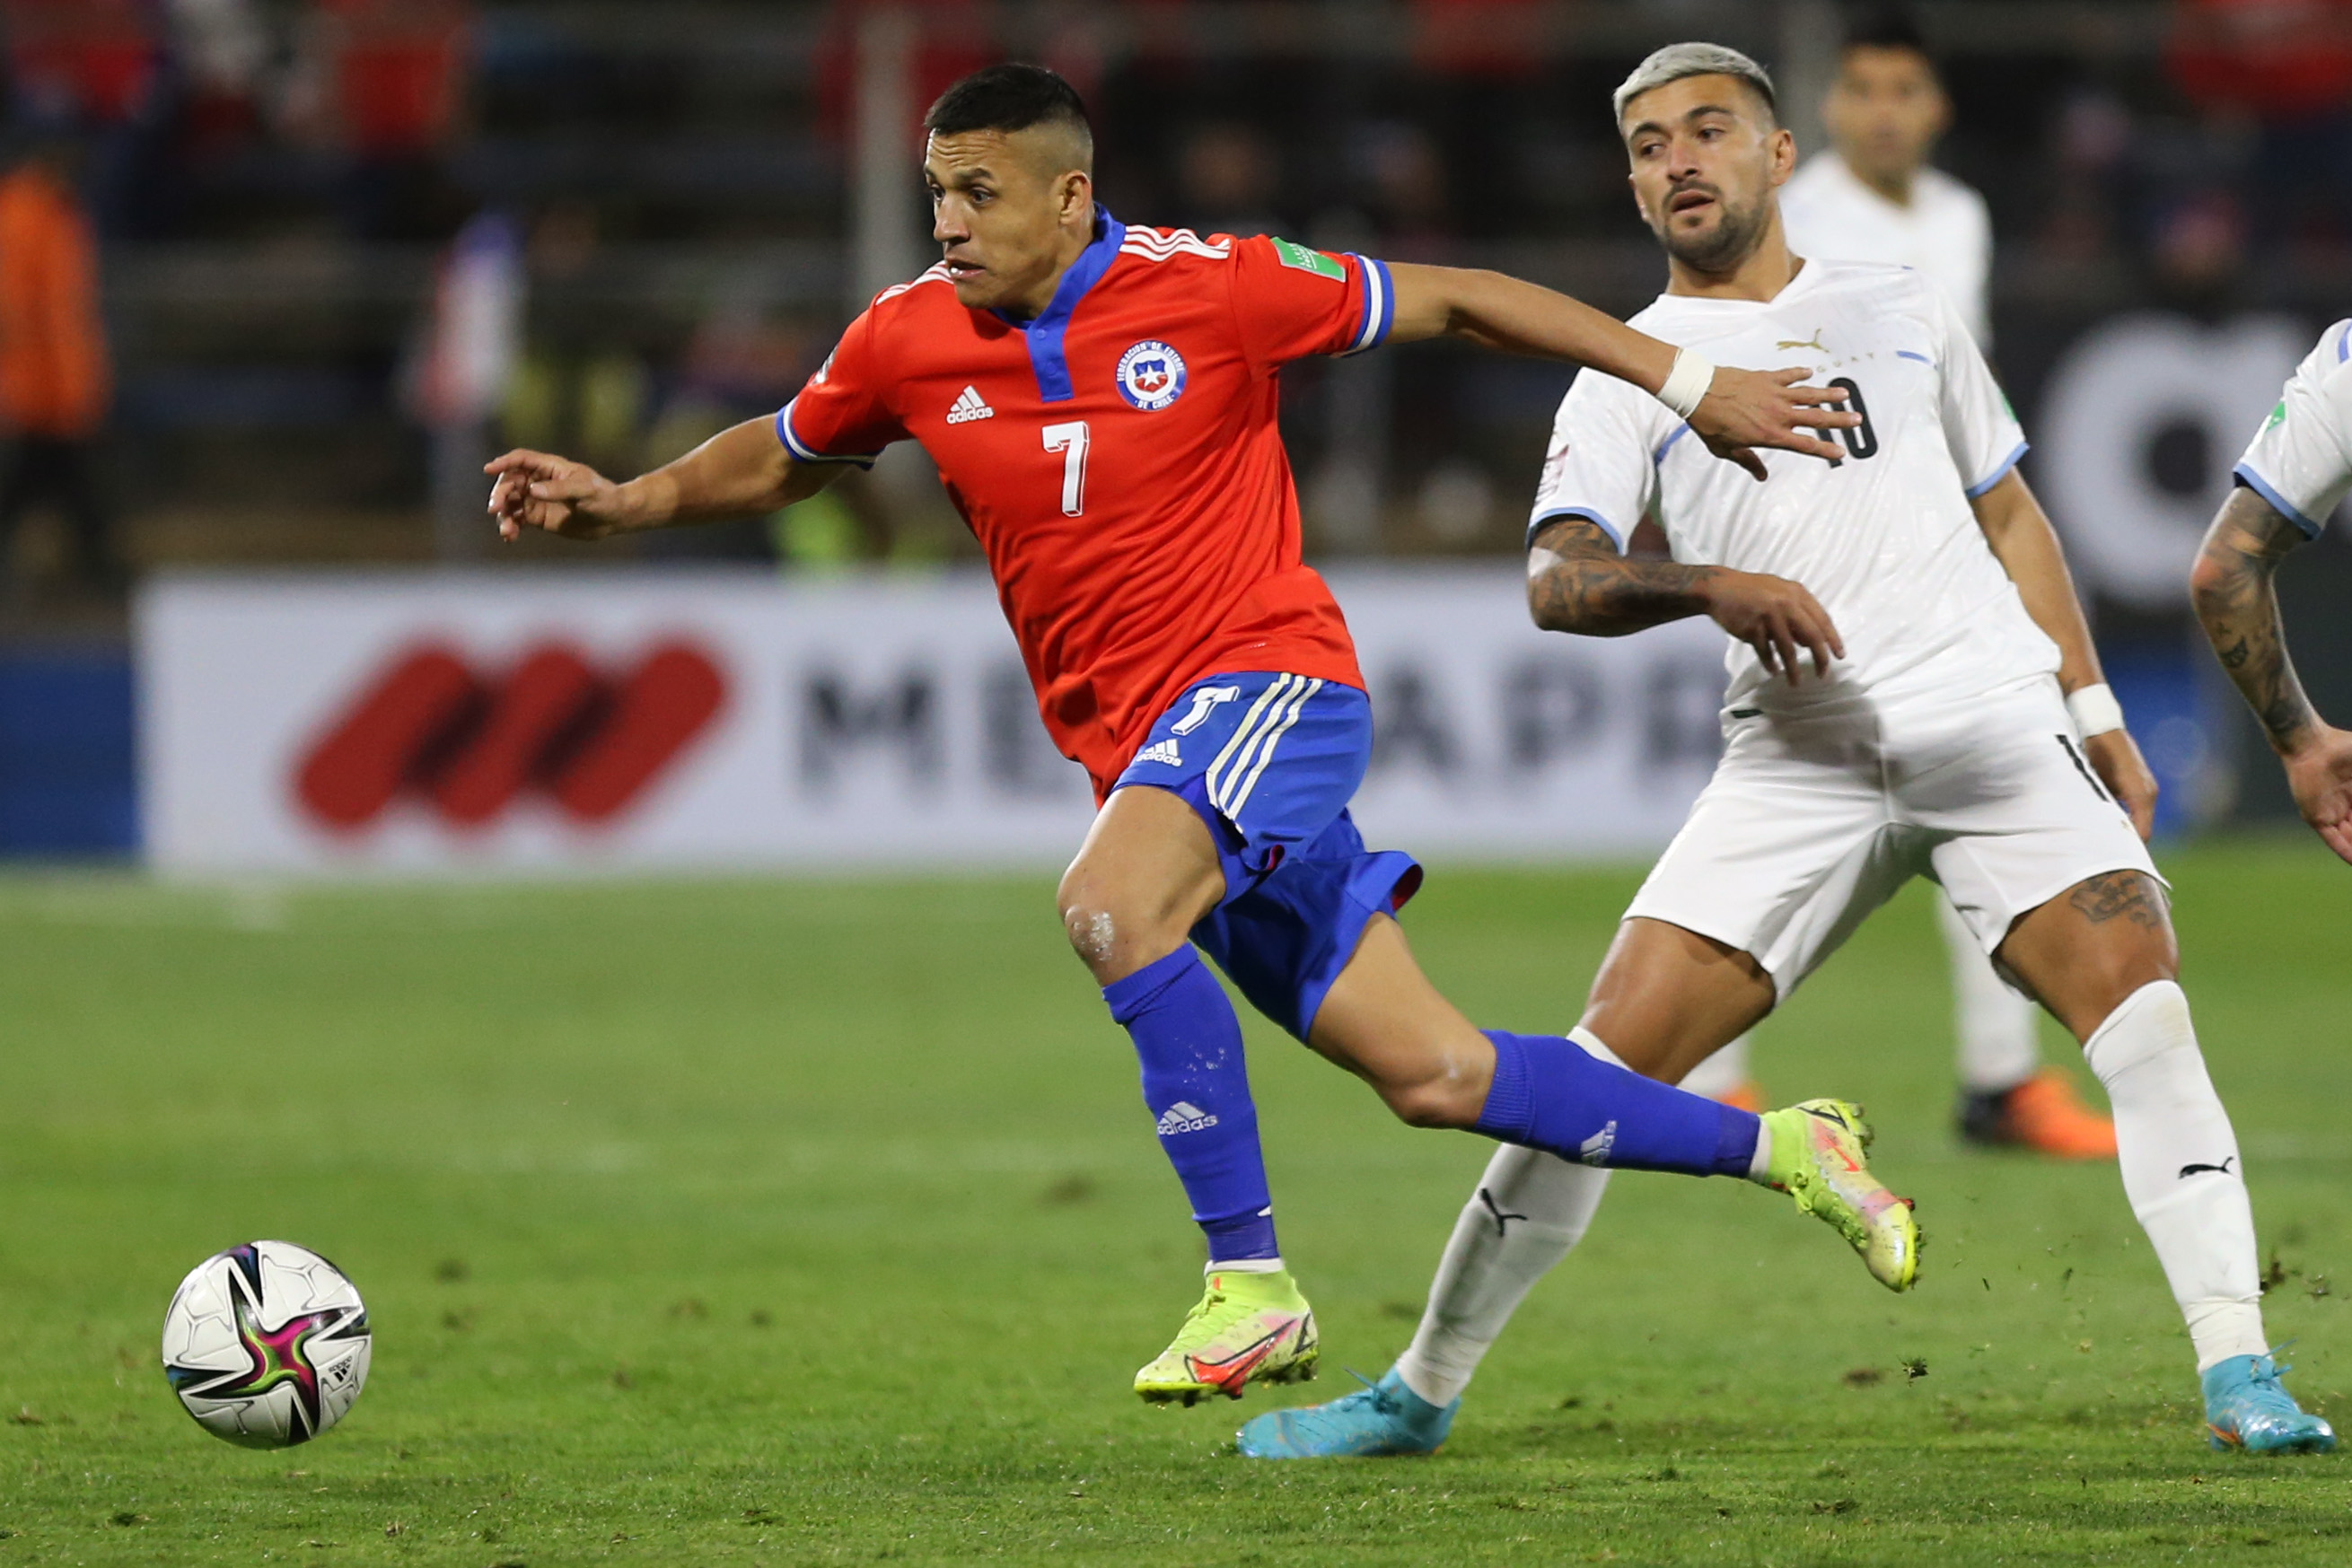 La Selección Chilena iría al choque contra todos para ir al Mundial 2026